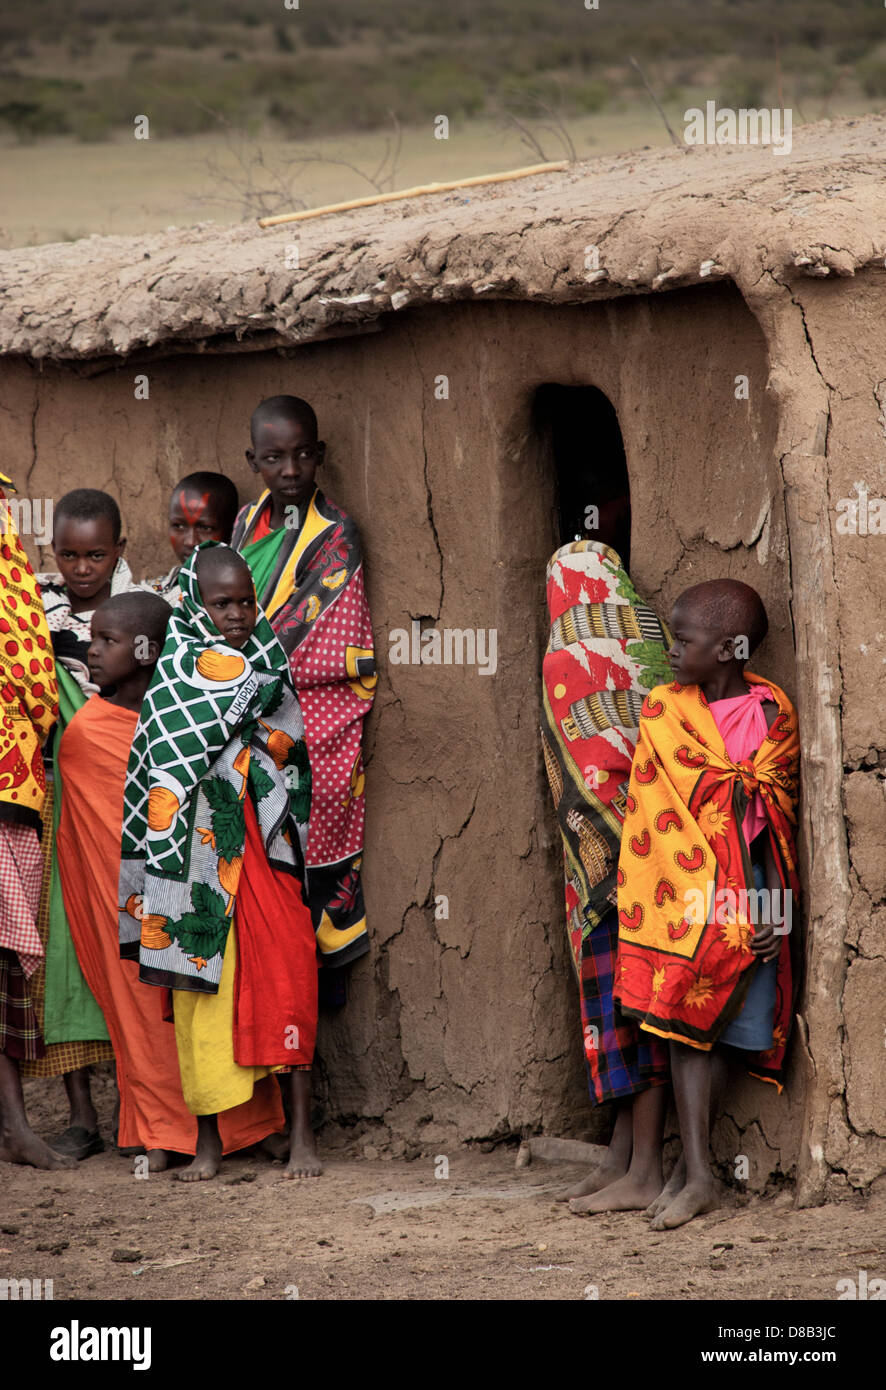 Enfants Masai, portant des vêtements traditionnels, près d'une hutte de terre dans un village de la Masai Mara, Kenya, Afrique Banque D'Images